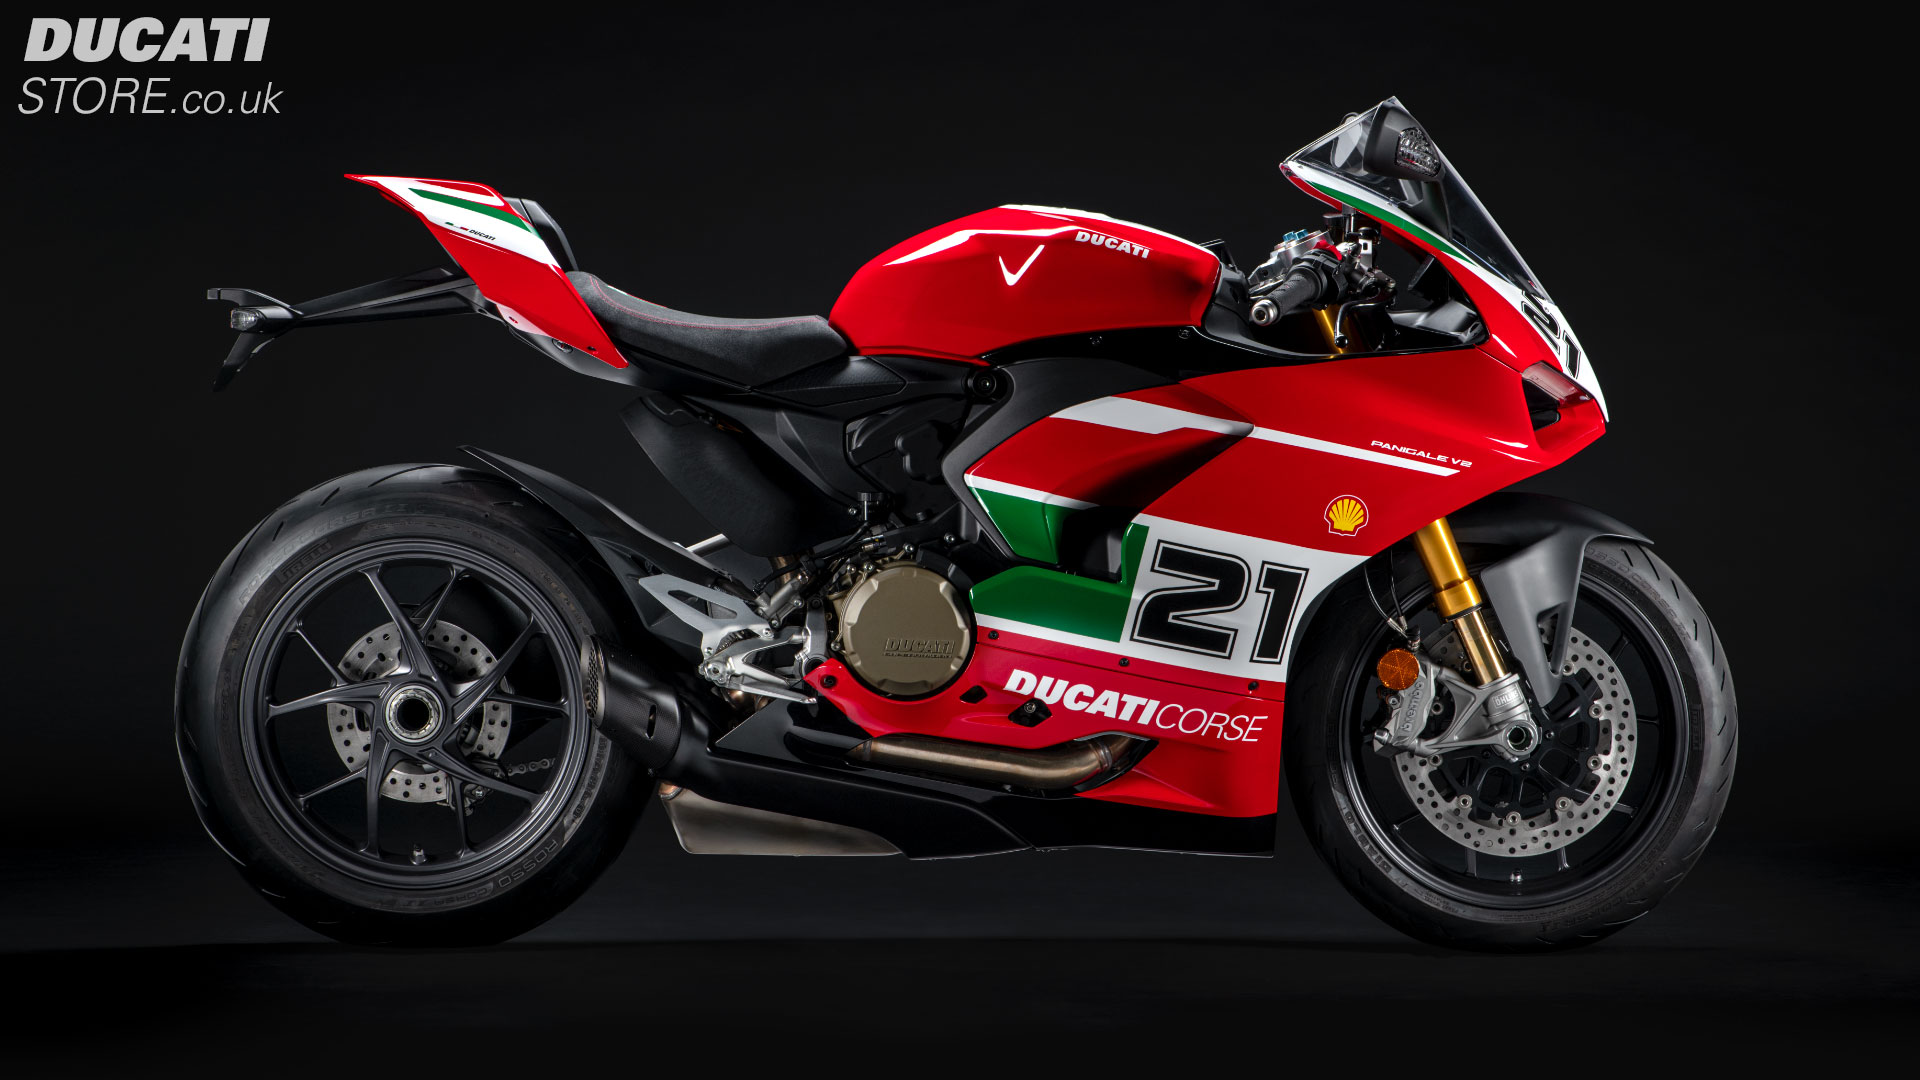 2022 Ducati Panigale V2 Bayliss for sale at Ducati Preston, Lancashire, Scotland